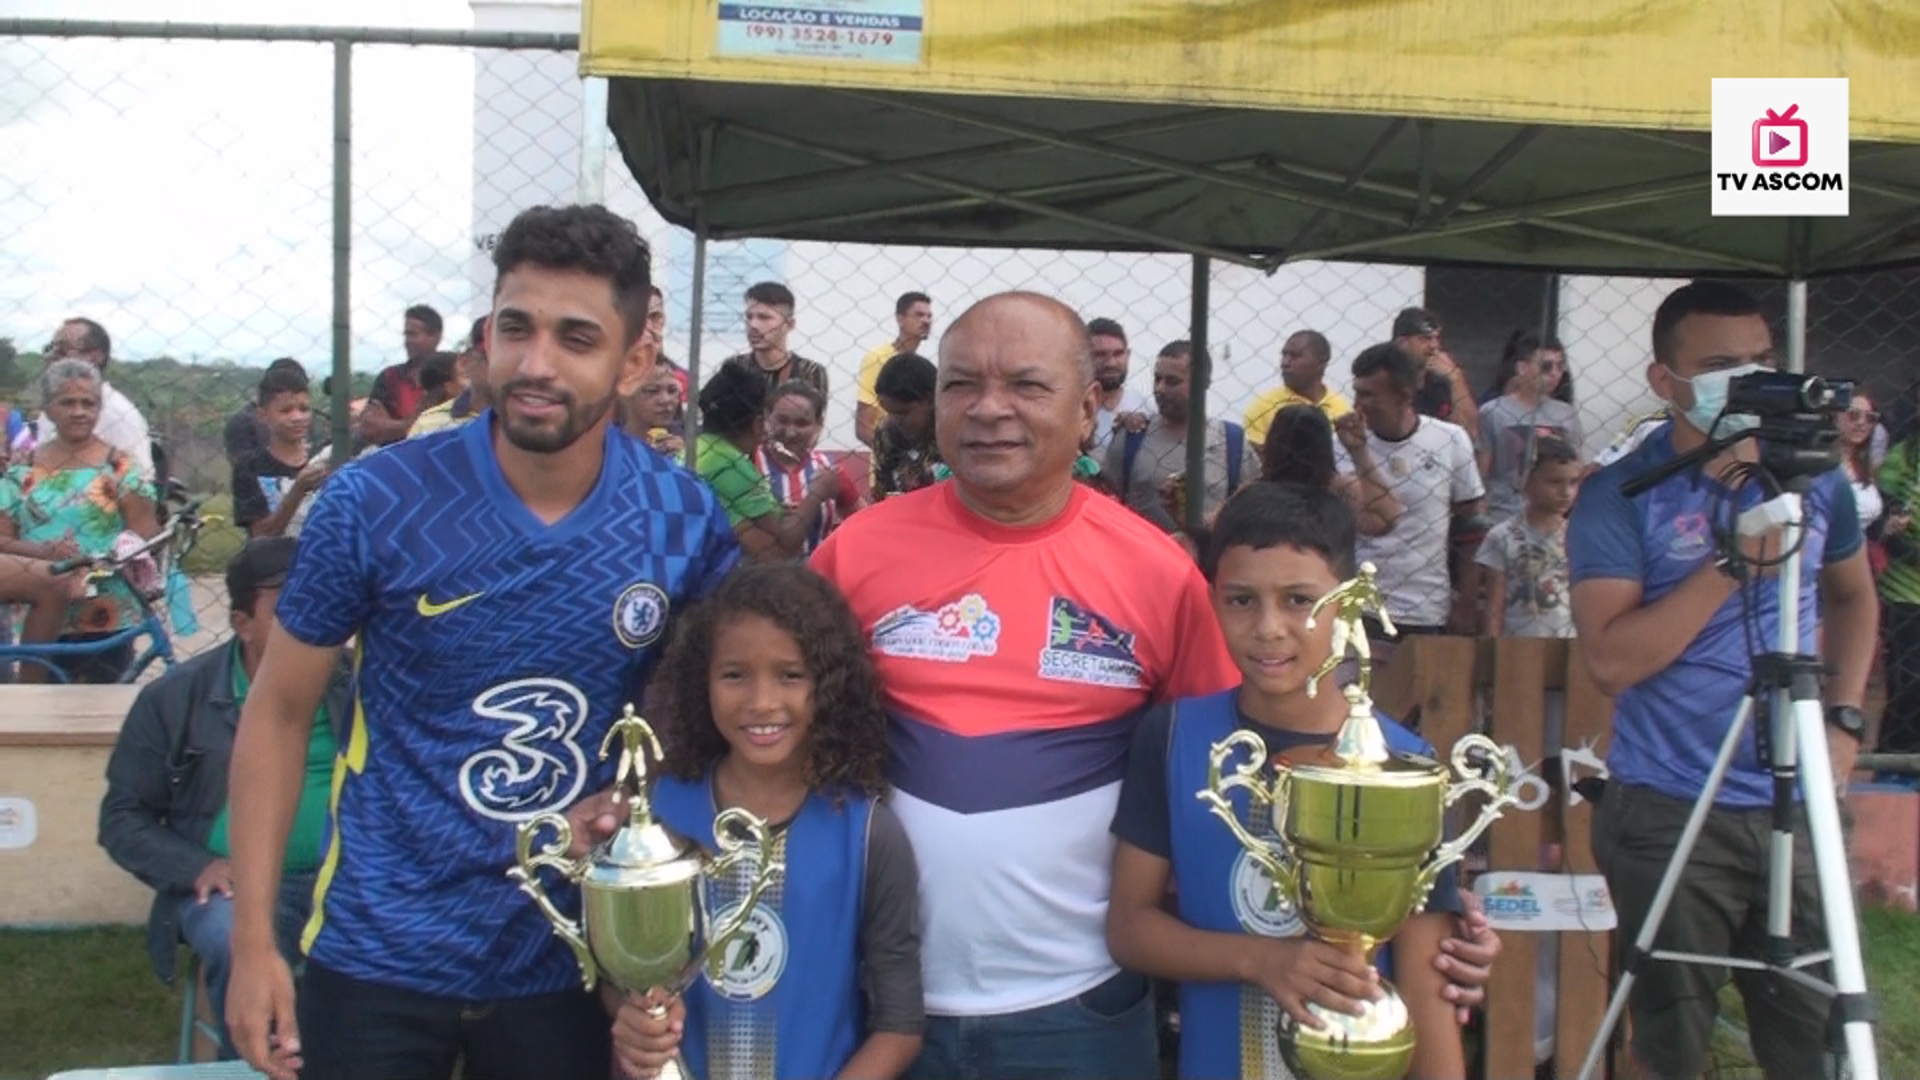 Sedel realiza final de mais uma competição esportiva no município : Campeonato do Trabalhador